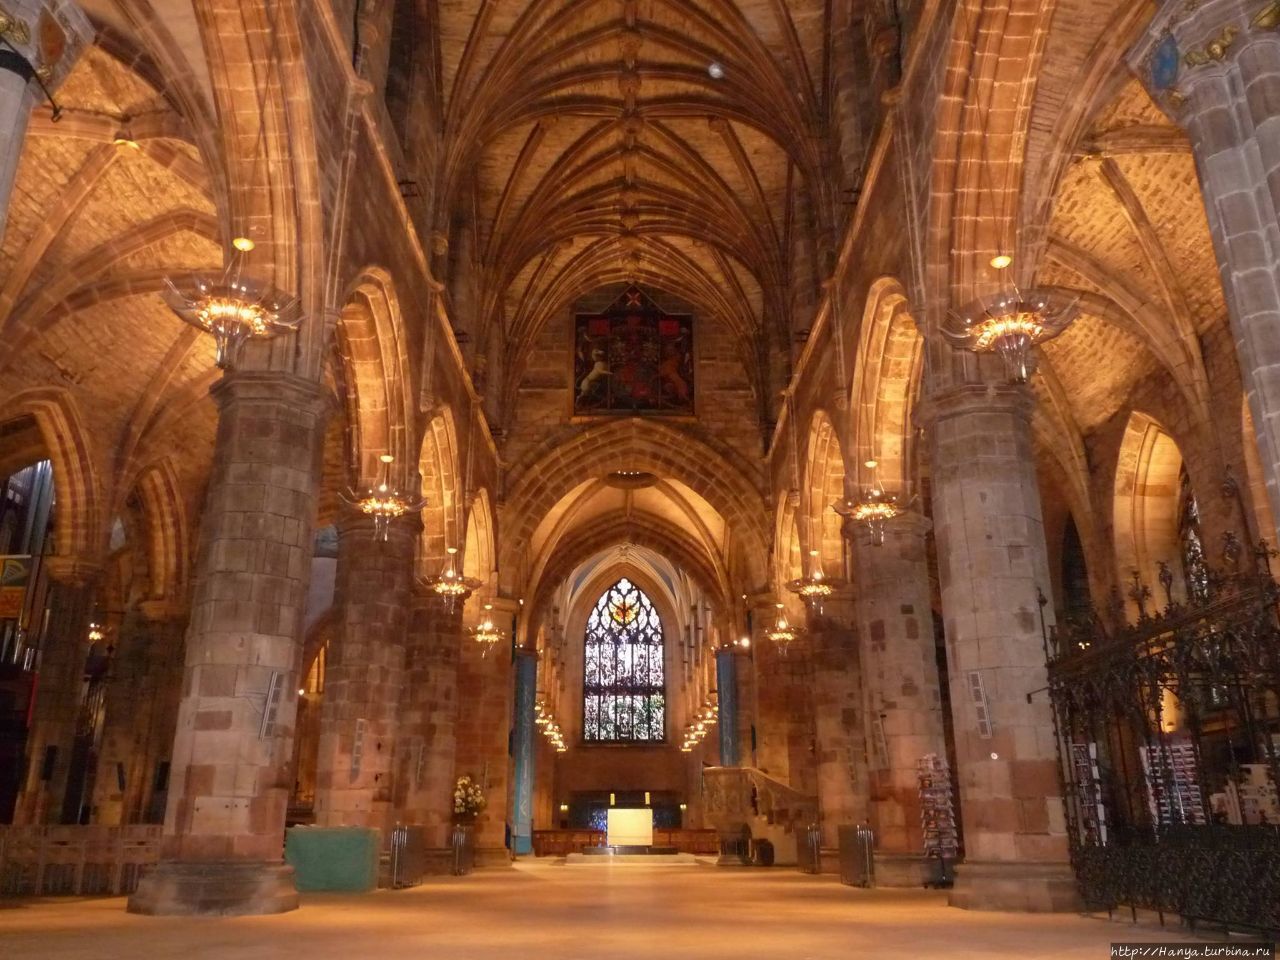 Кафедральный собор Сент-Джайлс (St Giles, Святого Эгидия), Эдинбург. Фото из интернета Эдинбург, Великобритания